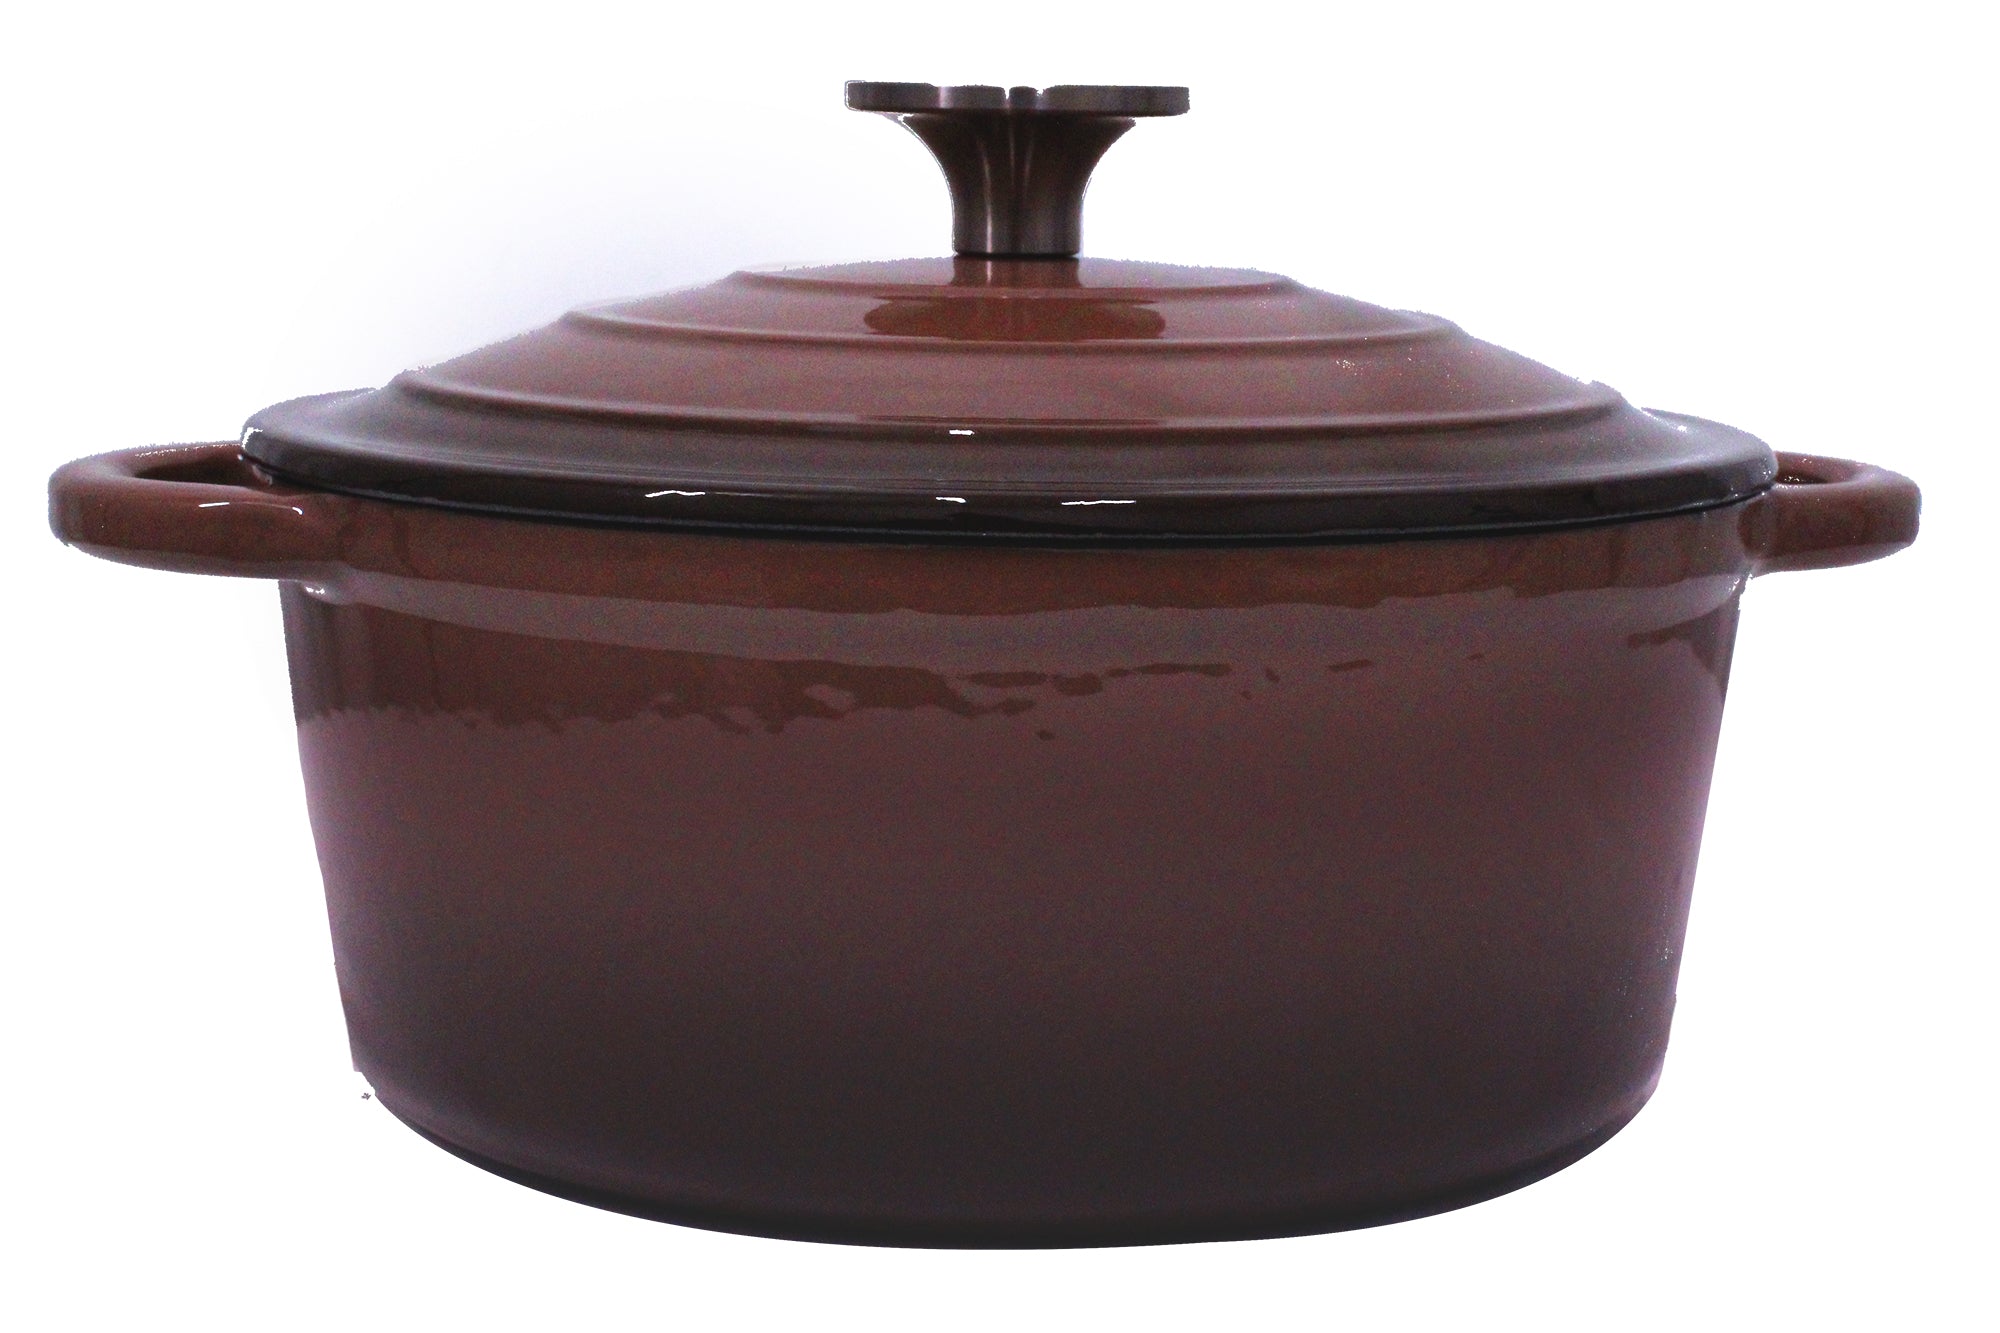 King Cuisine 7 Piece Glazed Cast Iron Dutch Oven Pot & Pan Set - Morelle